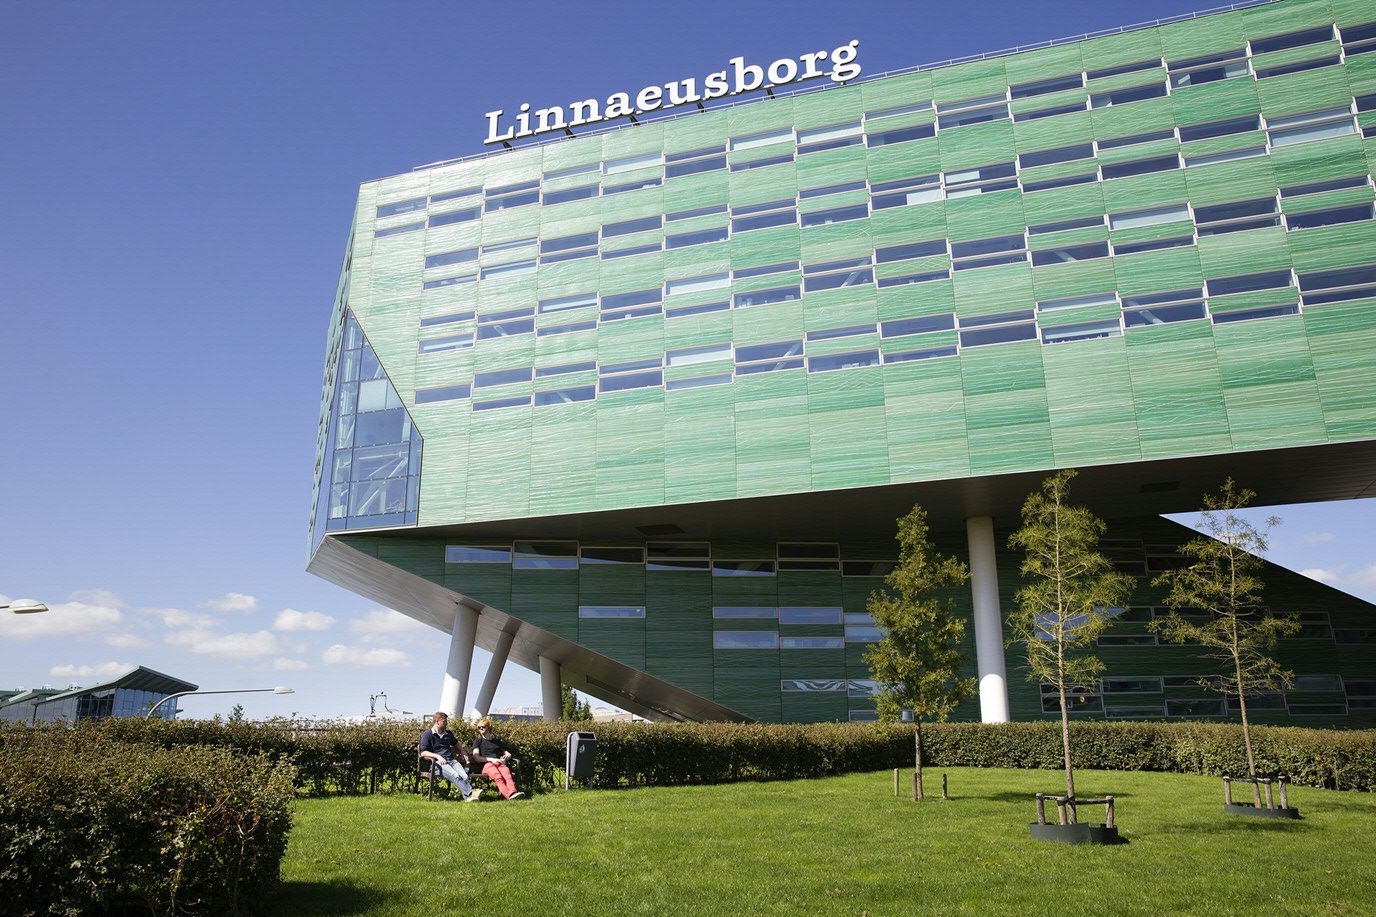 Linnaeusborg